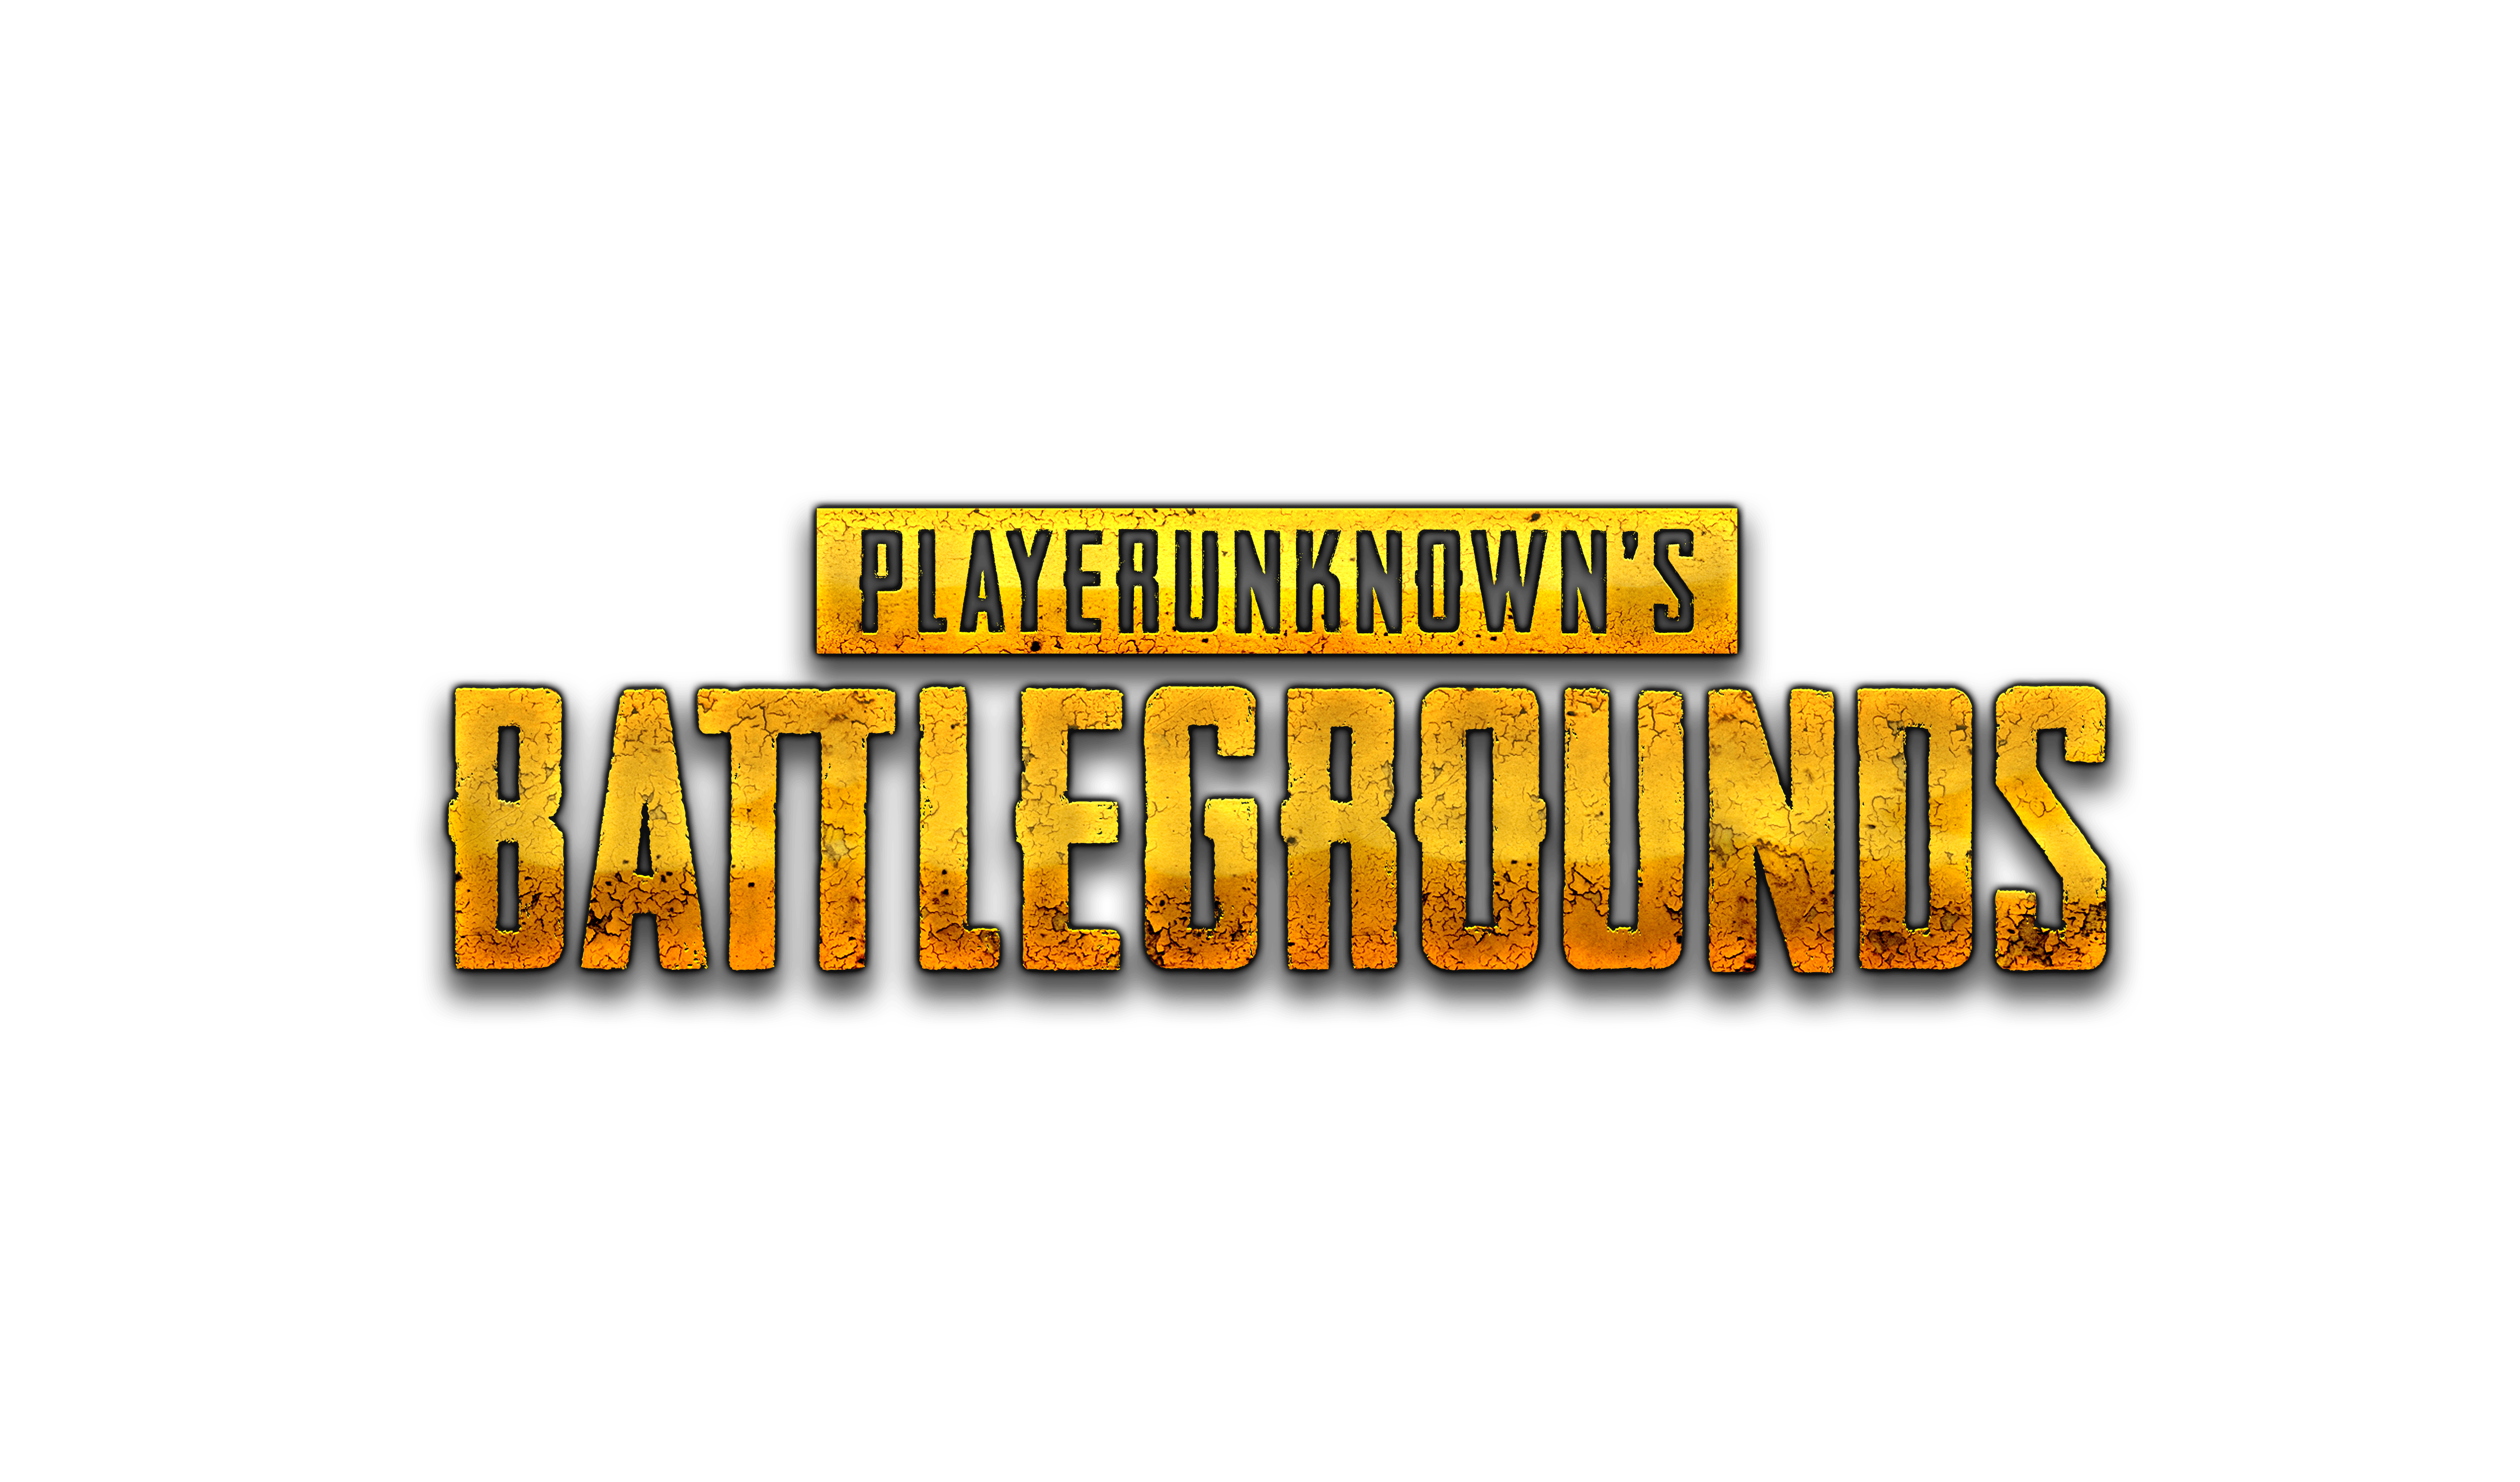 Player Unknown's Battlegrounds